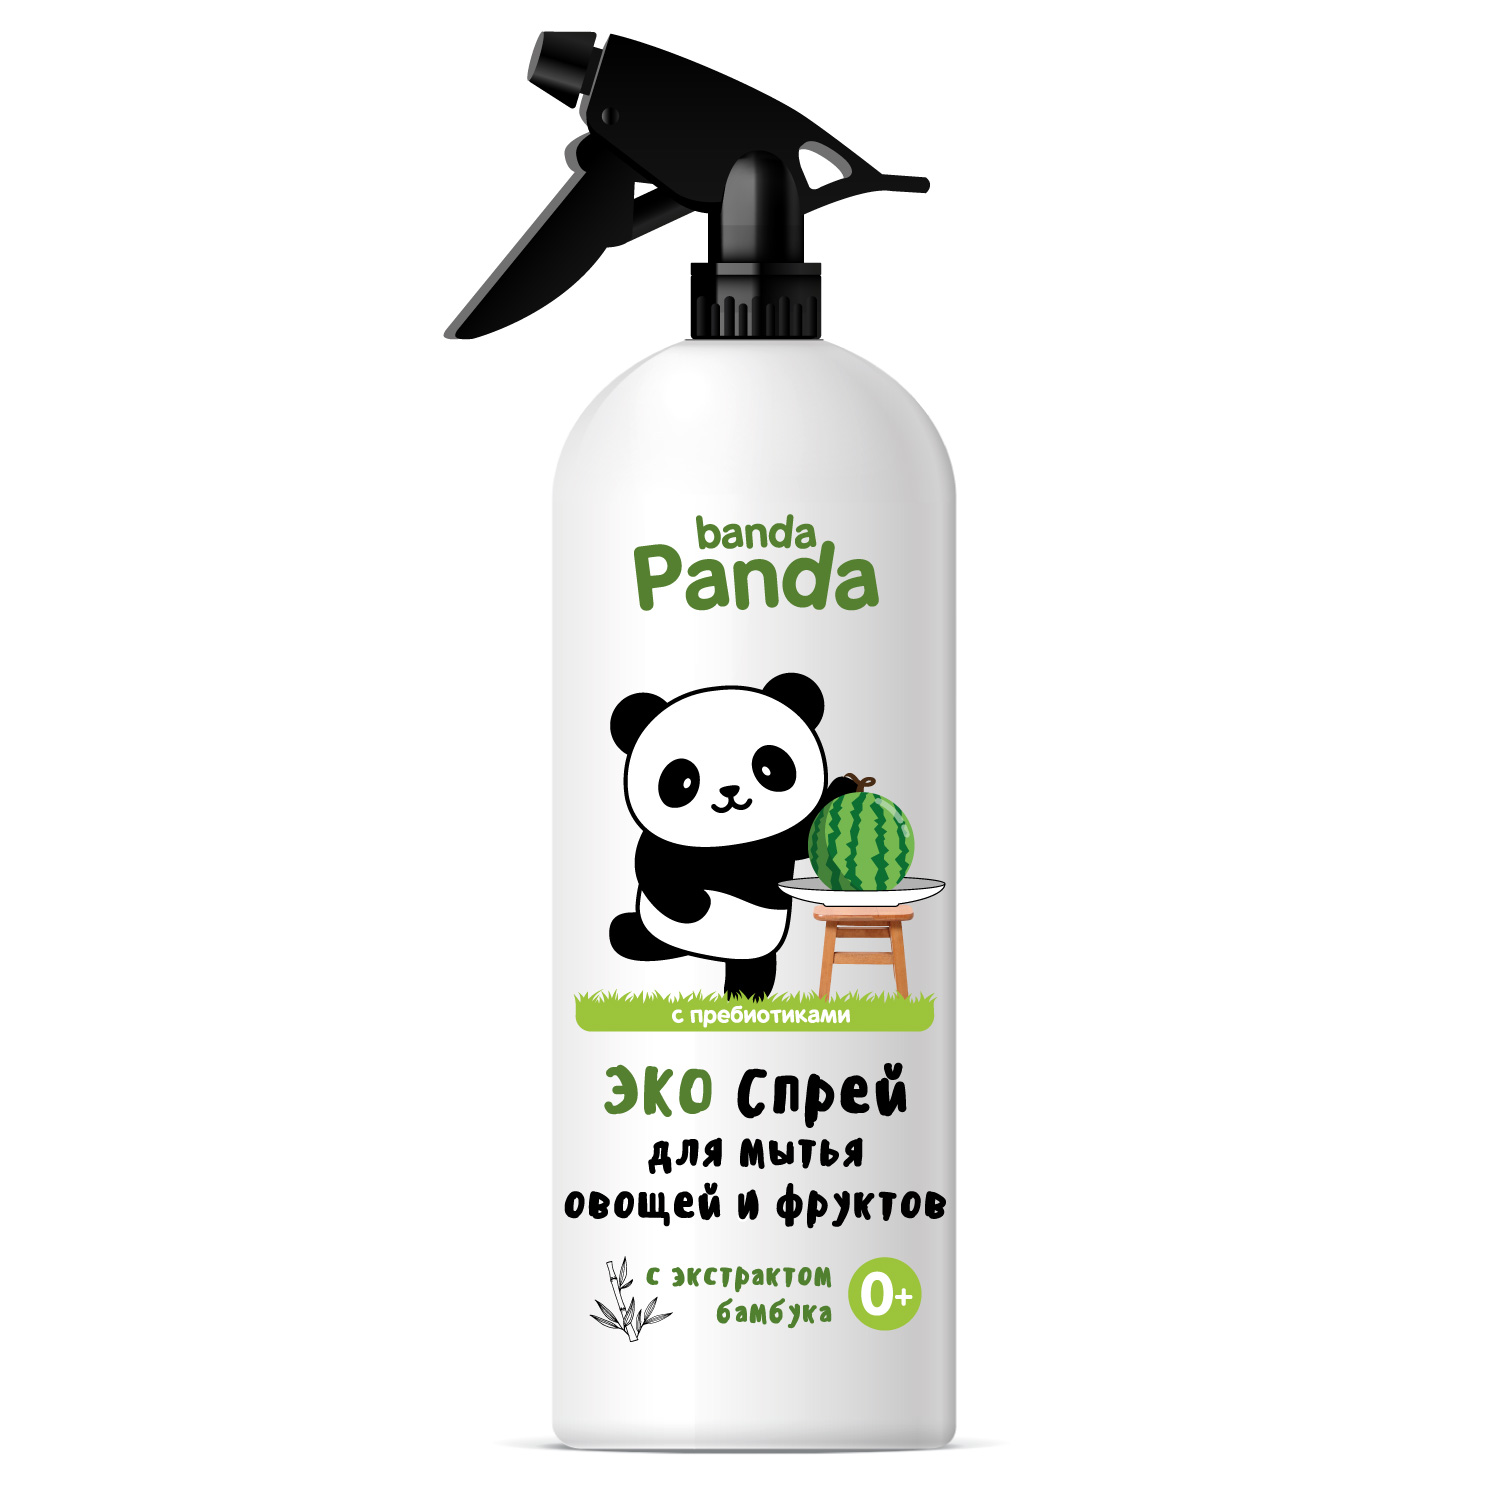 Универсальное средство для мытья овощей и фруктов с антимикробным эффектом серии banda Panda, 1000 мл.